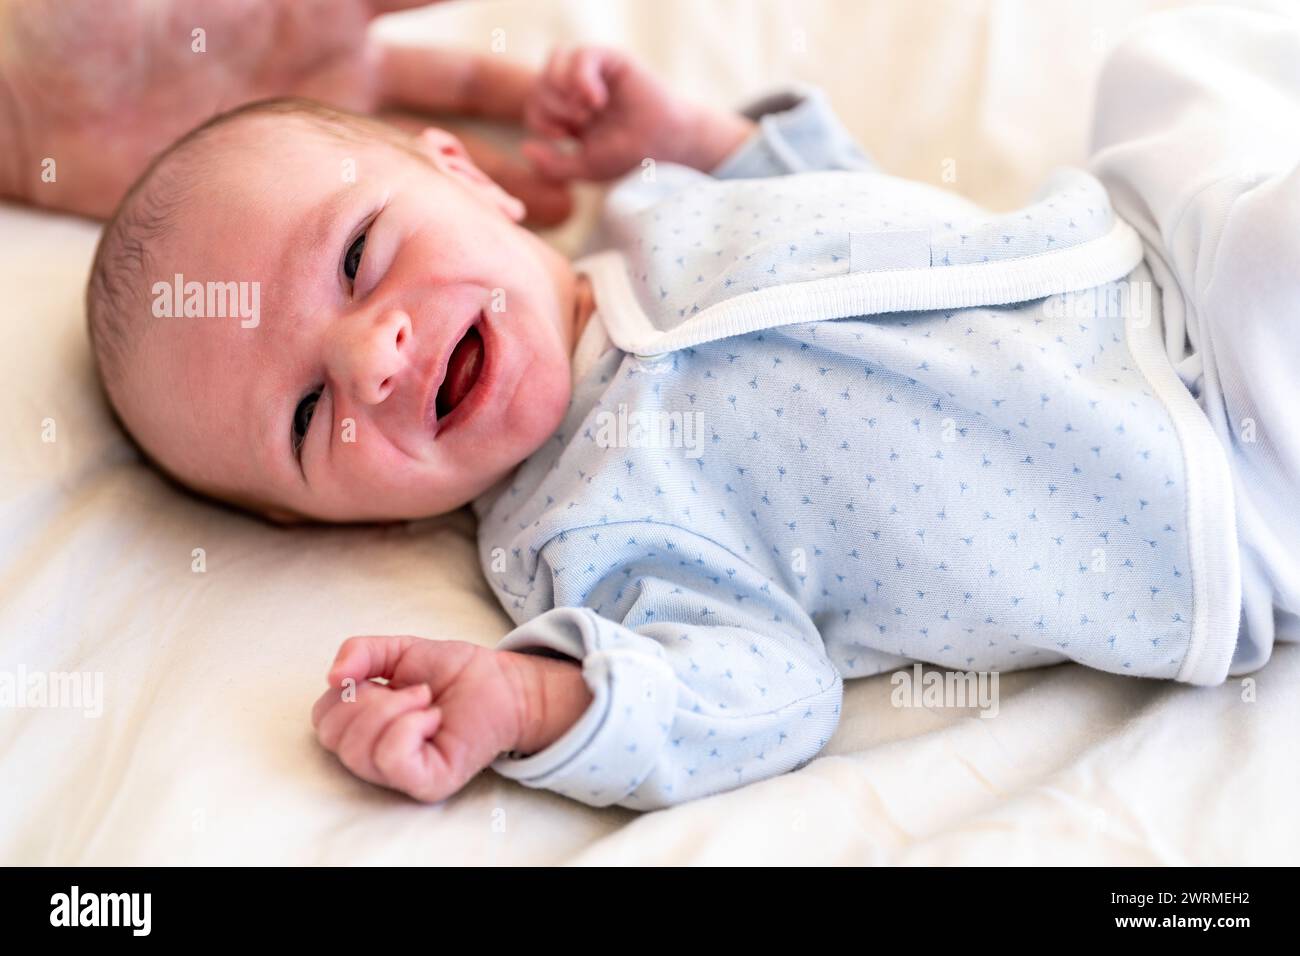 Ein waches Neugeborenes in einem gemusterten Einteiler liegt auf einer weichen Oberfläche und blickt mit neugierigen Augen und einem teilweise offenen Mund Stockfoto